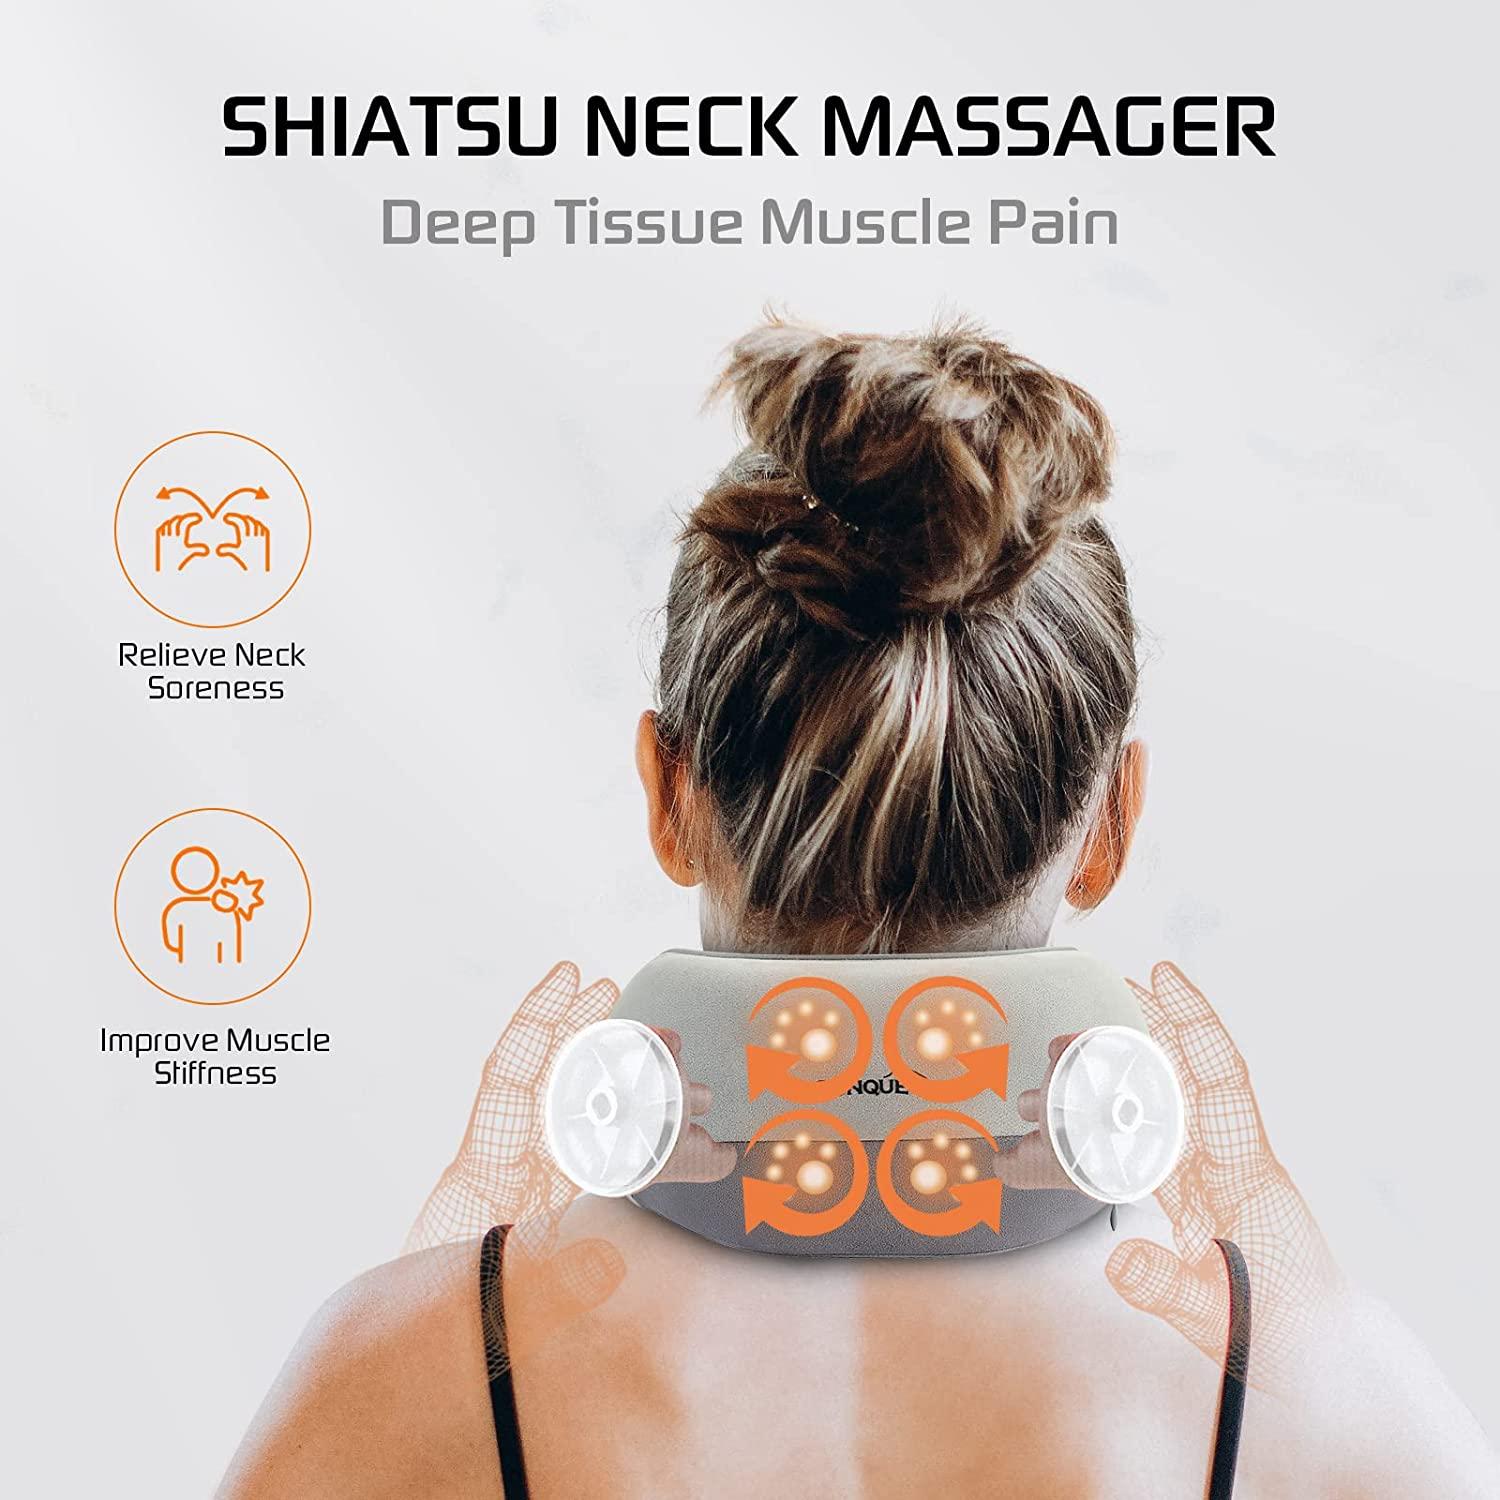 Cordless Shiatsu Neck and Body Massager